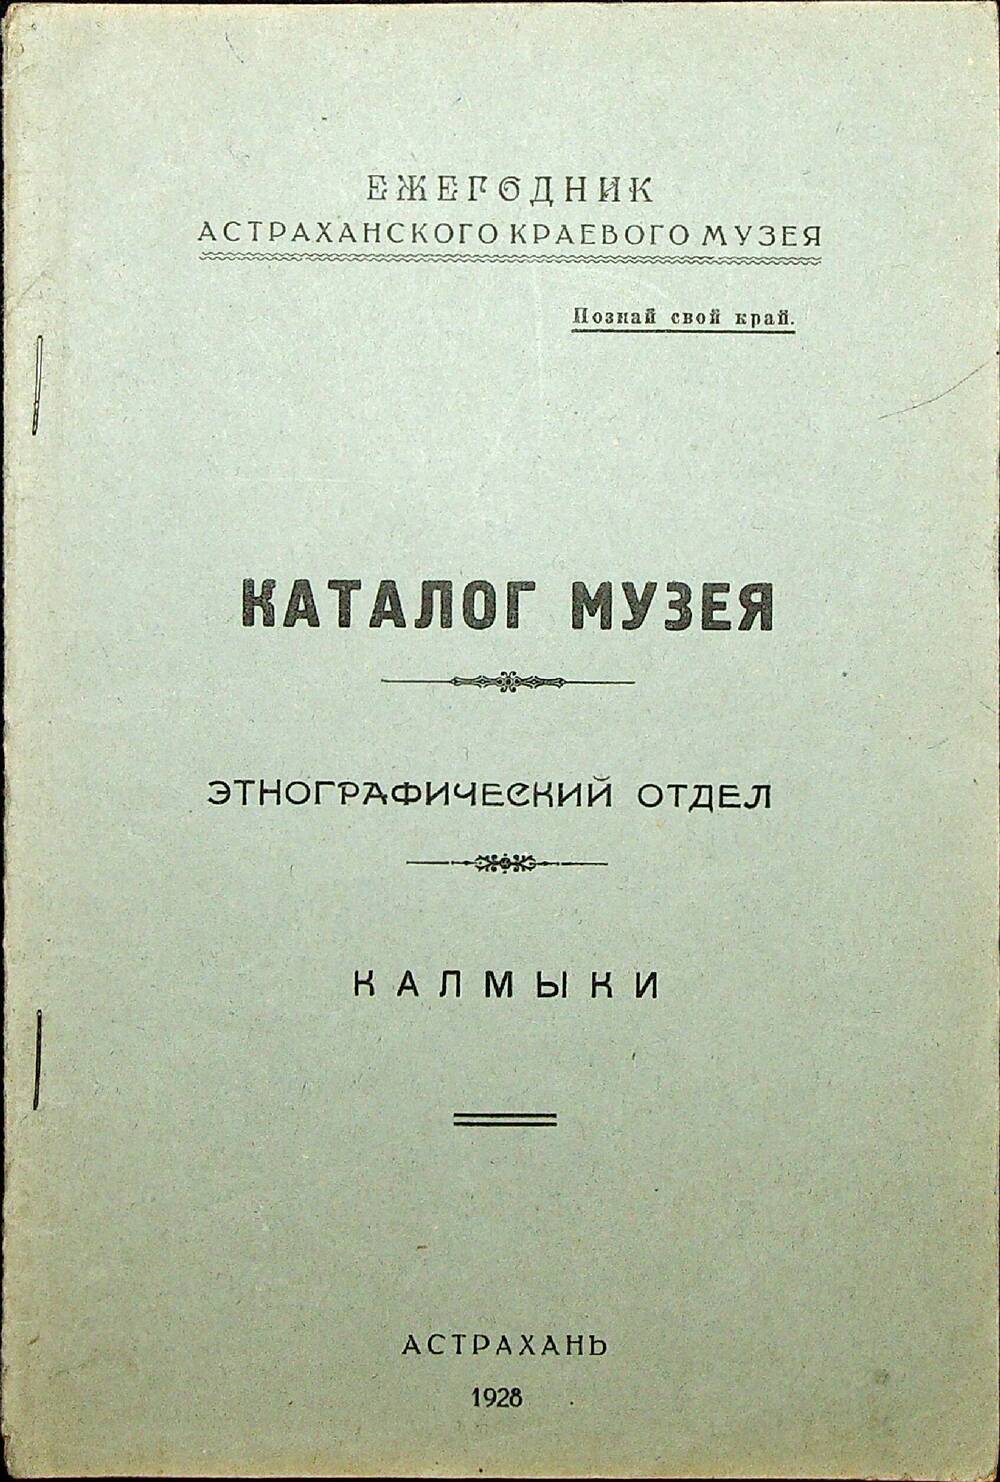 Каталог музея. Этнографический отдел. Калмыки. Астрахань, 1928 г.